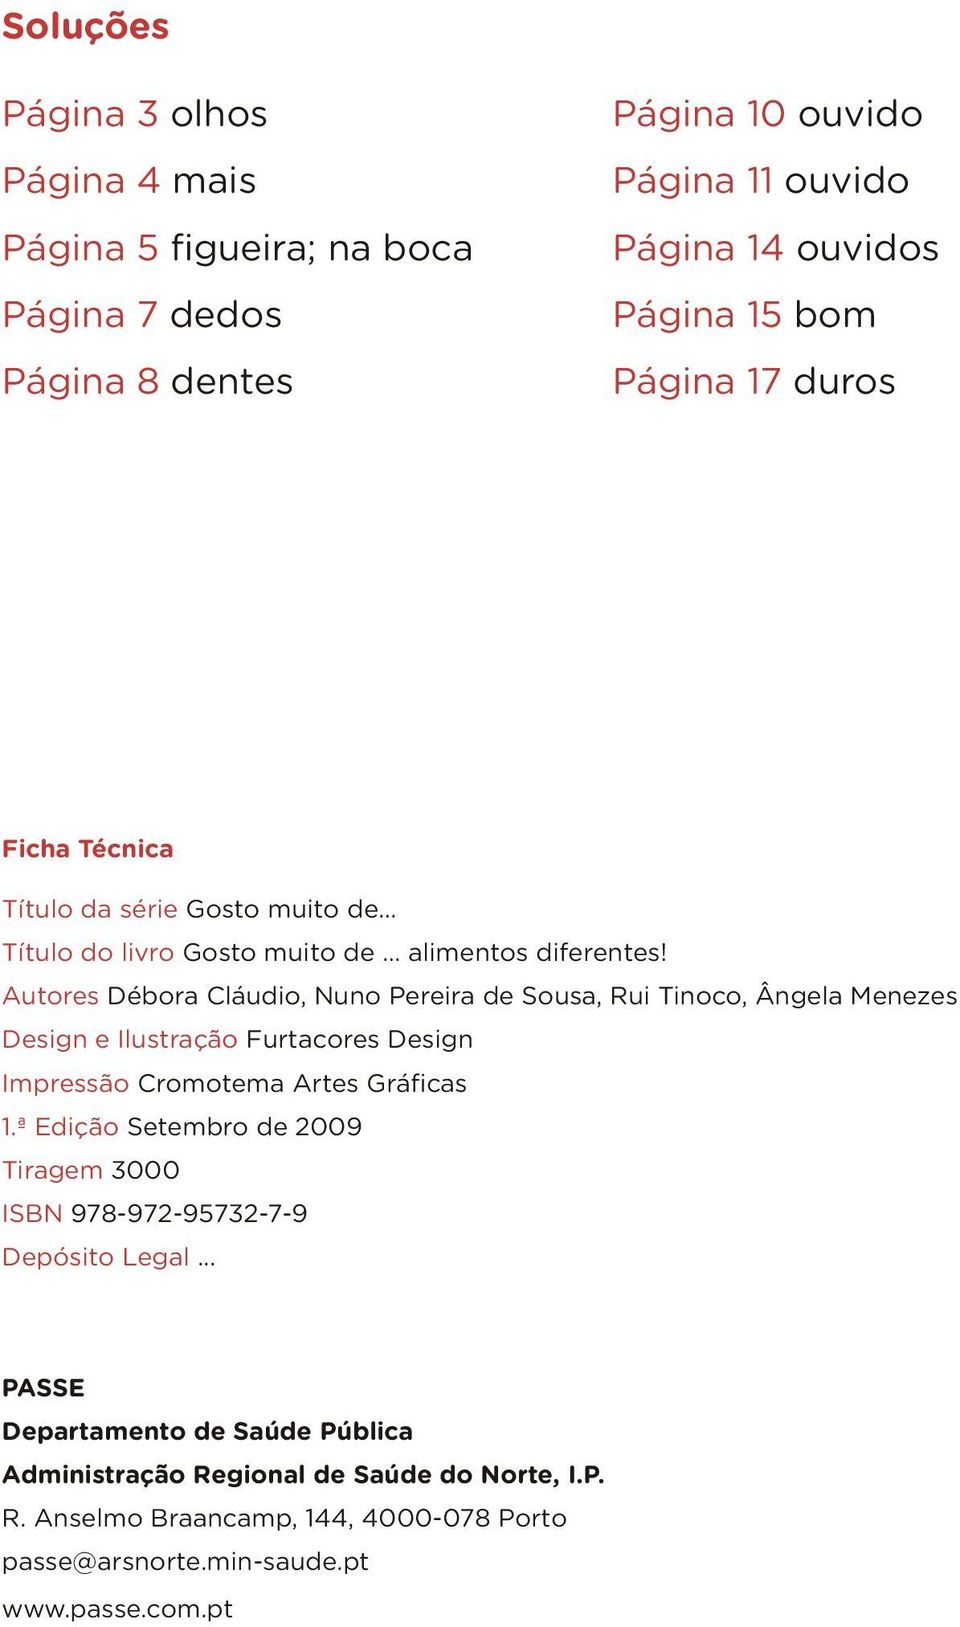 Autores Débora Cláudio, Nuno Pereira de Sousa, Rui Tinoco, Ângela Menezes Design e Ilustração Furtacores Design Impressão Cromotema Artes Gráficas 1.